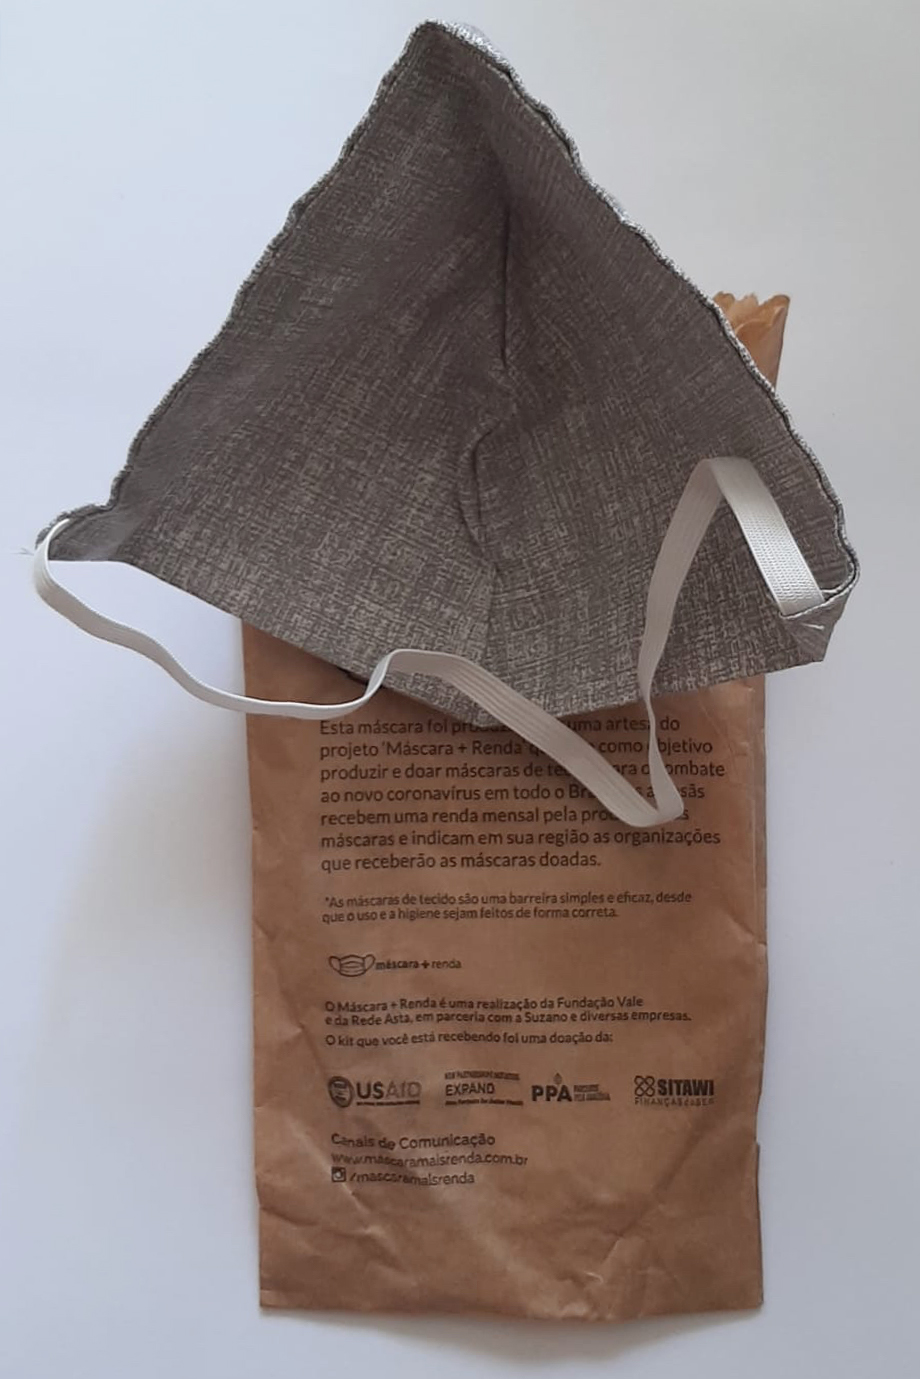 triângulos de tecido unidos por uma única fita elástica que foram entregues em sacos estampados com o selo da agência norte-americana USAid e instruções de uso que correspondem a outros modelos.